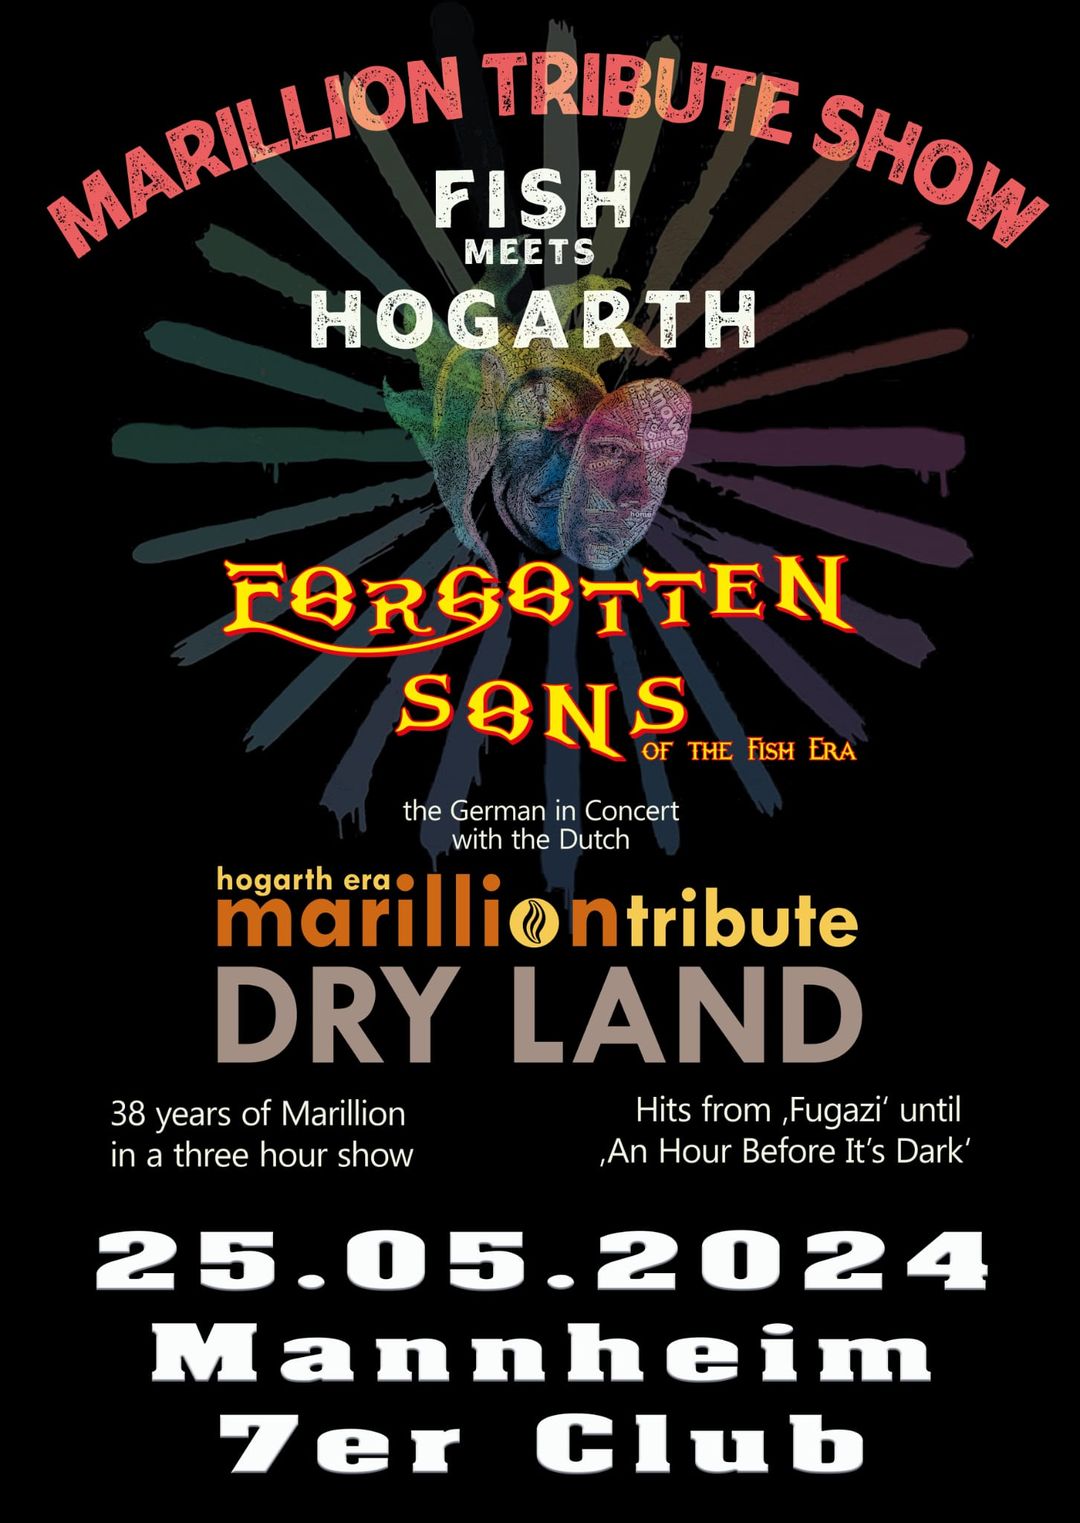 Dryland Marillion Tribute at Mannheim 7er Club